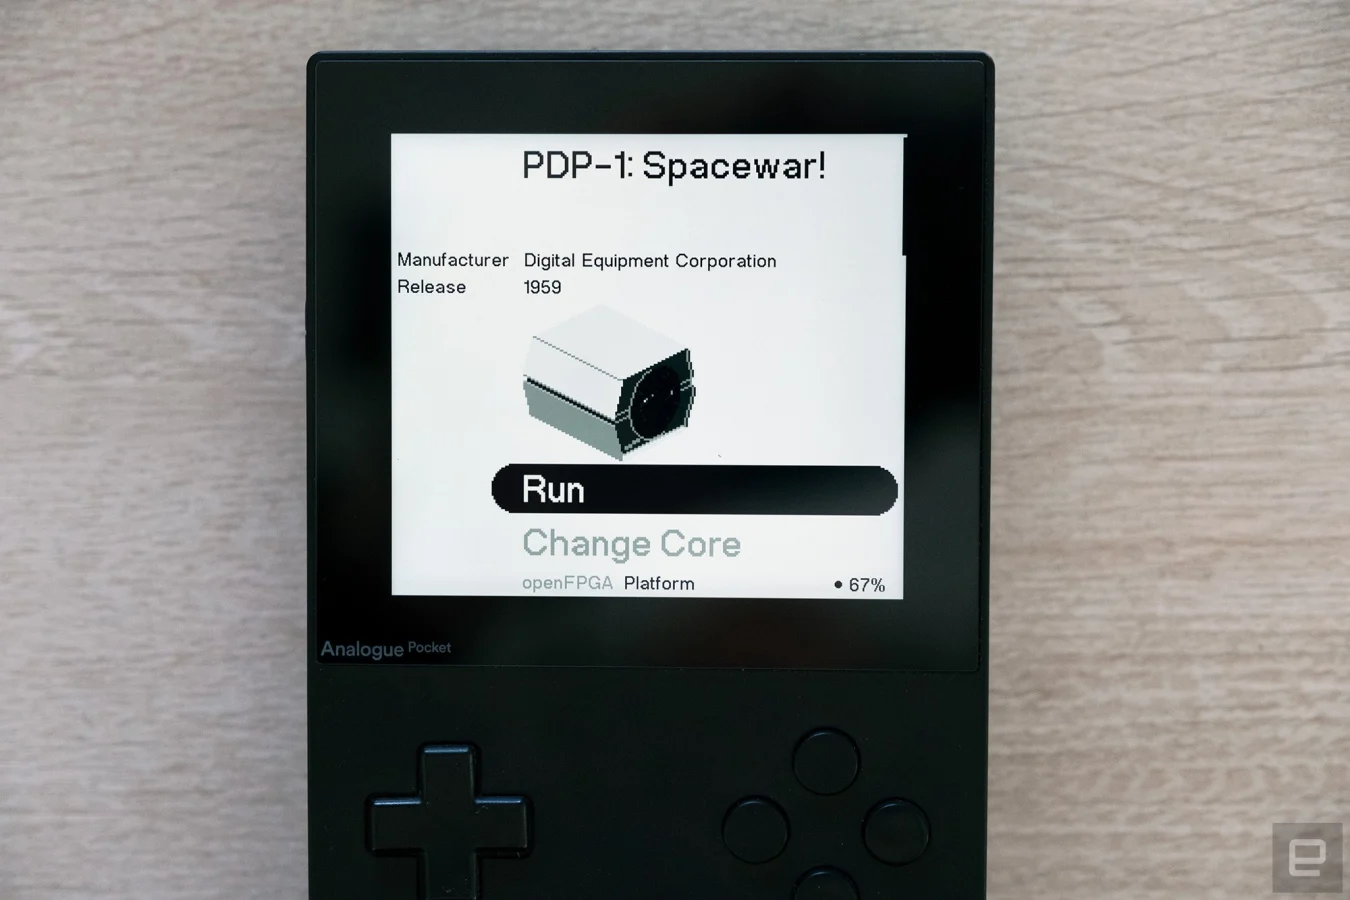 Los juegos de bolsillo analógicos portátiles se ofrecen con el primer núcleo desarrollado por terceros.  Este núcleo permite a los propietarios de Pocket jugar uno de los primeros videojuegos: ¡Spacewar!